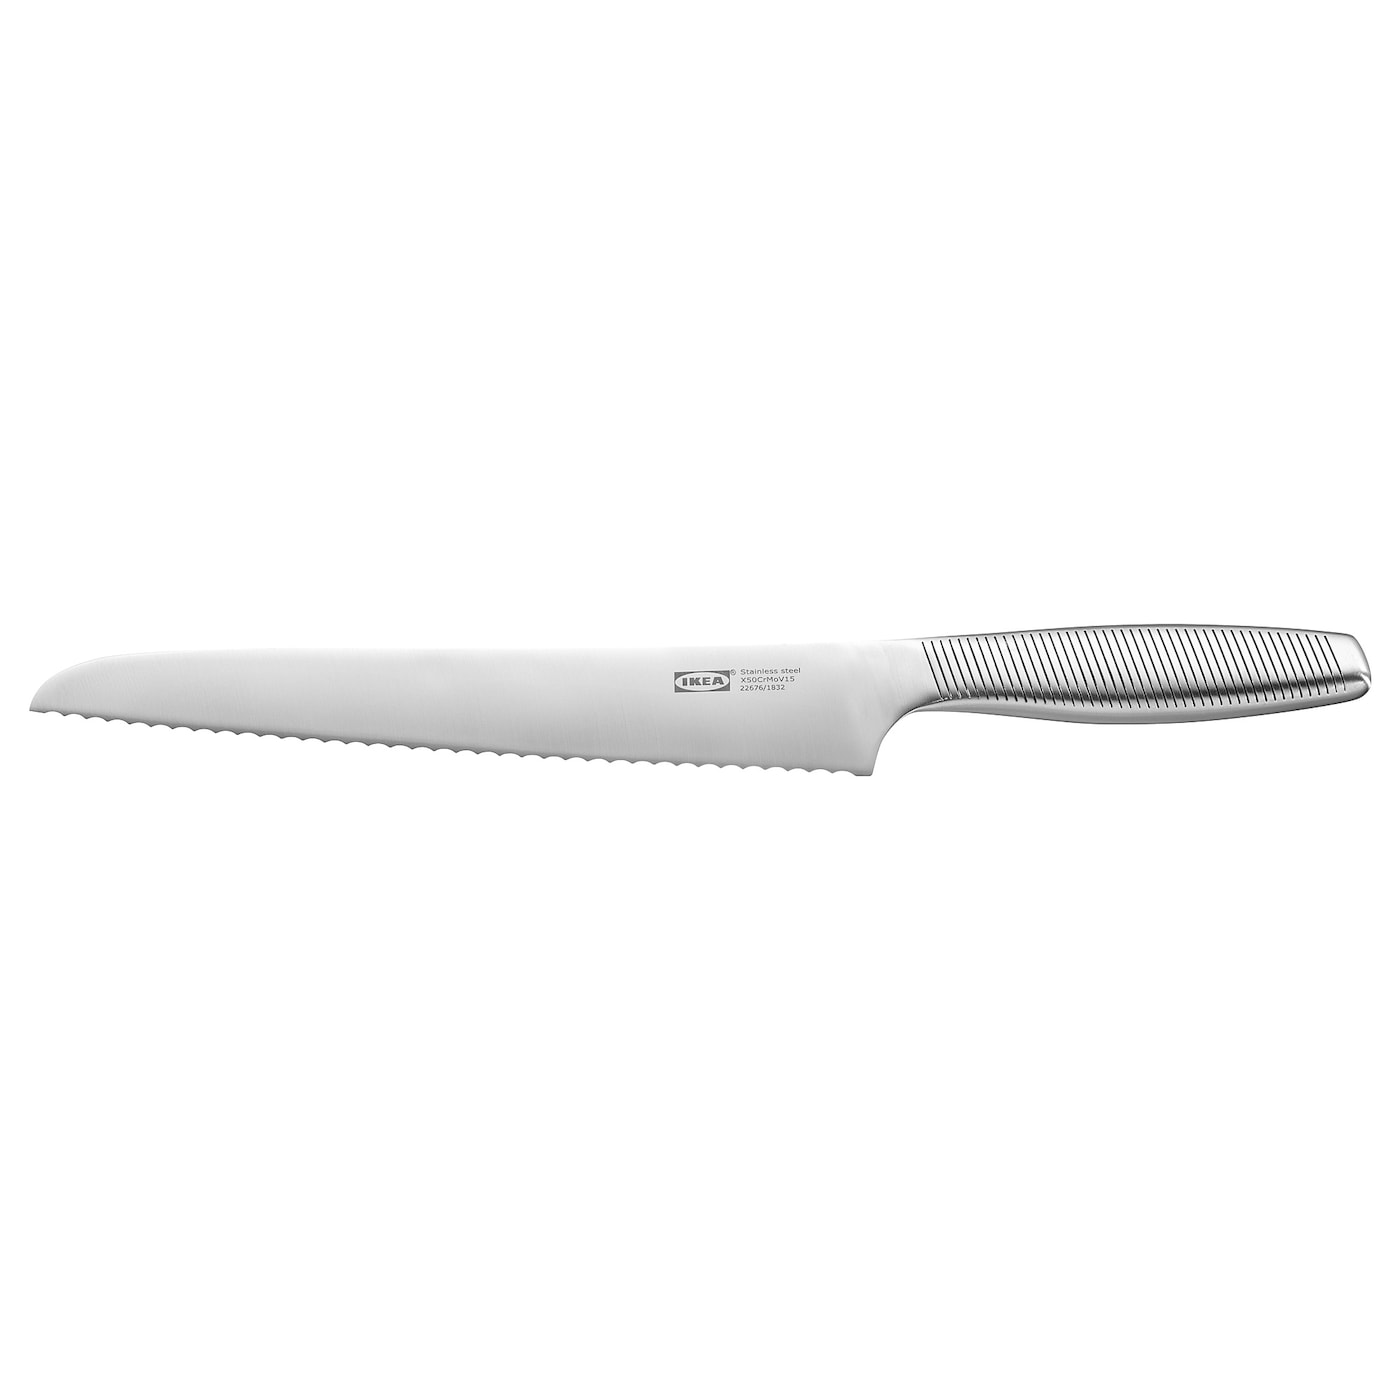 IKEA 365+ ИКЕА/365+ Нож для хлеба, нержавеющ сталь, 23 см IKEA нож ikea 365 23 см серебряный